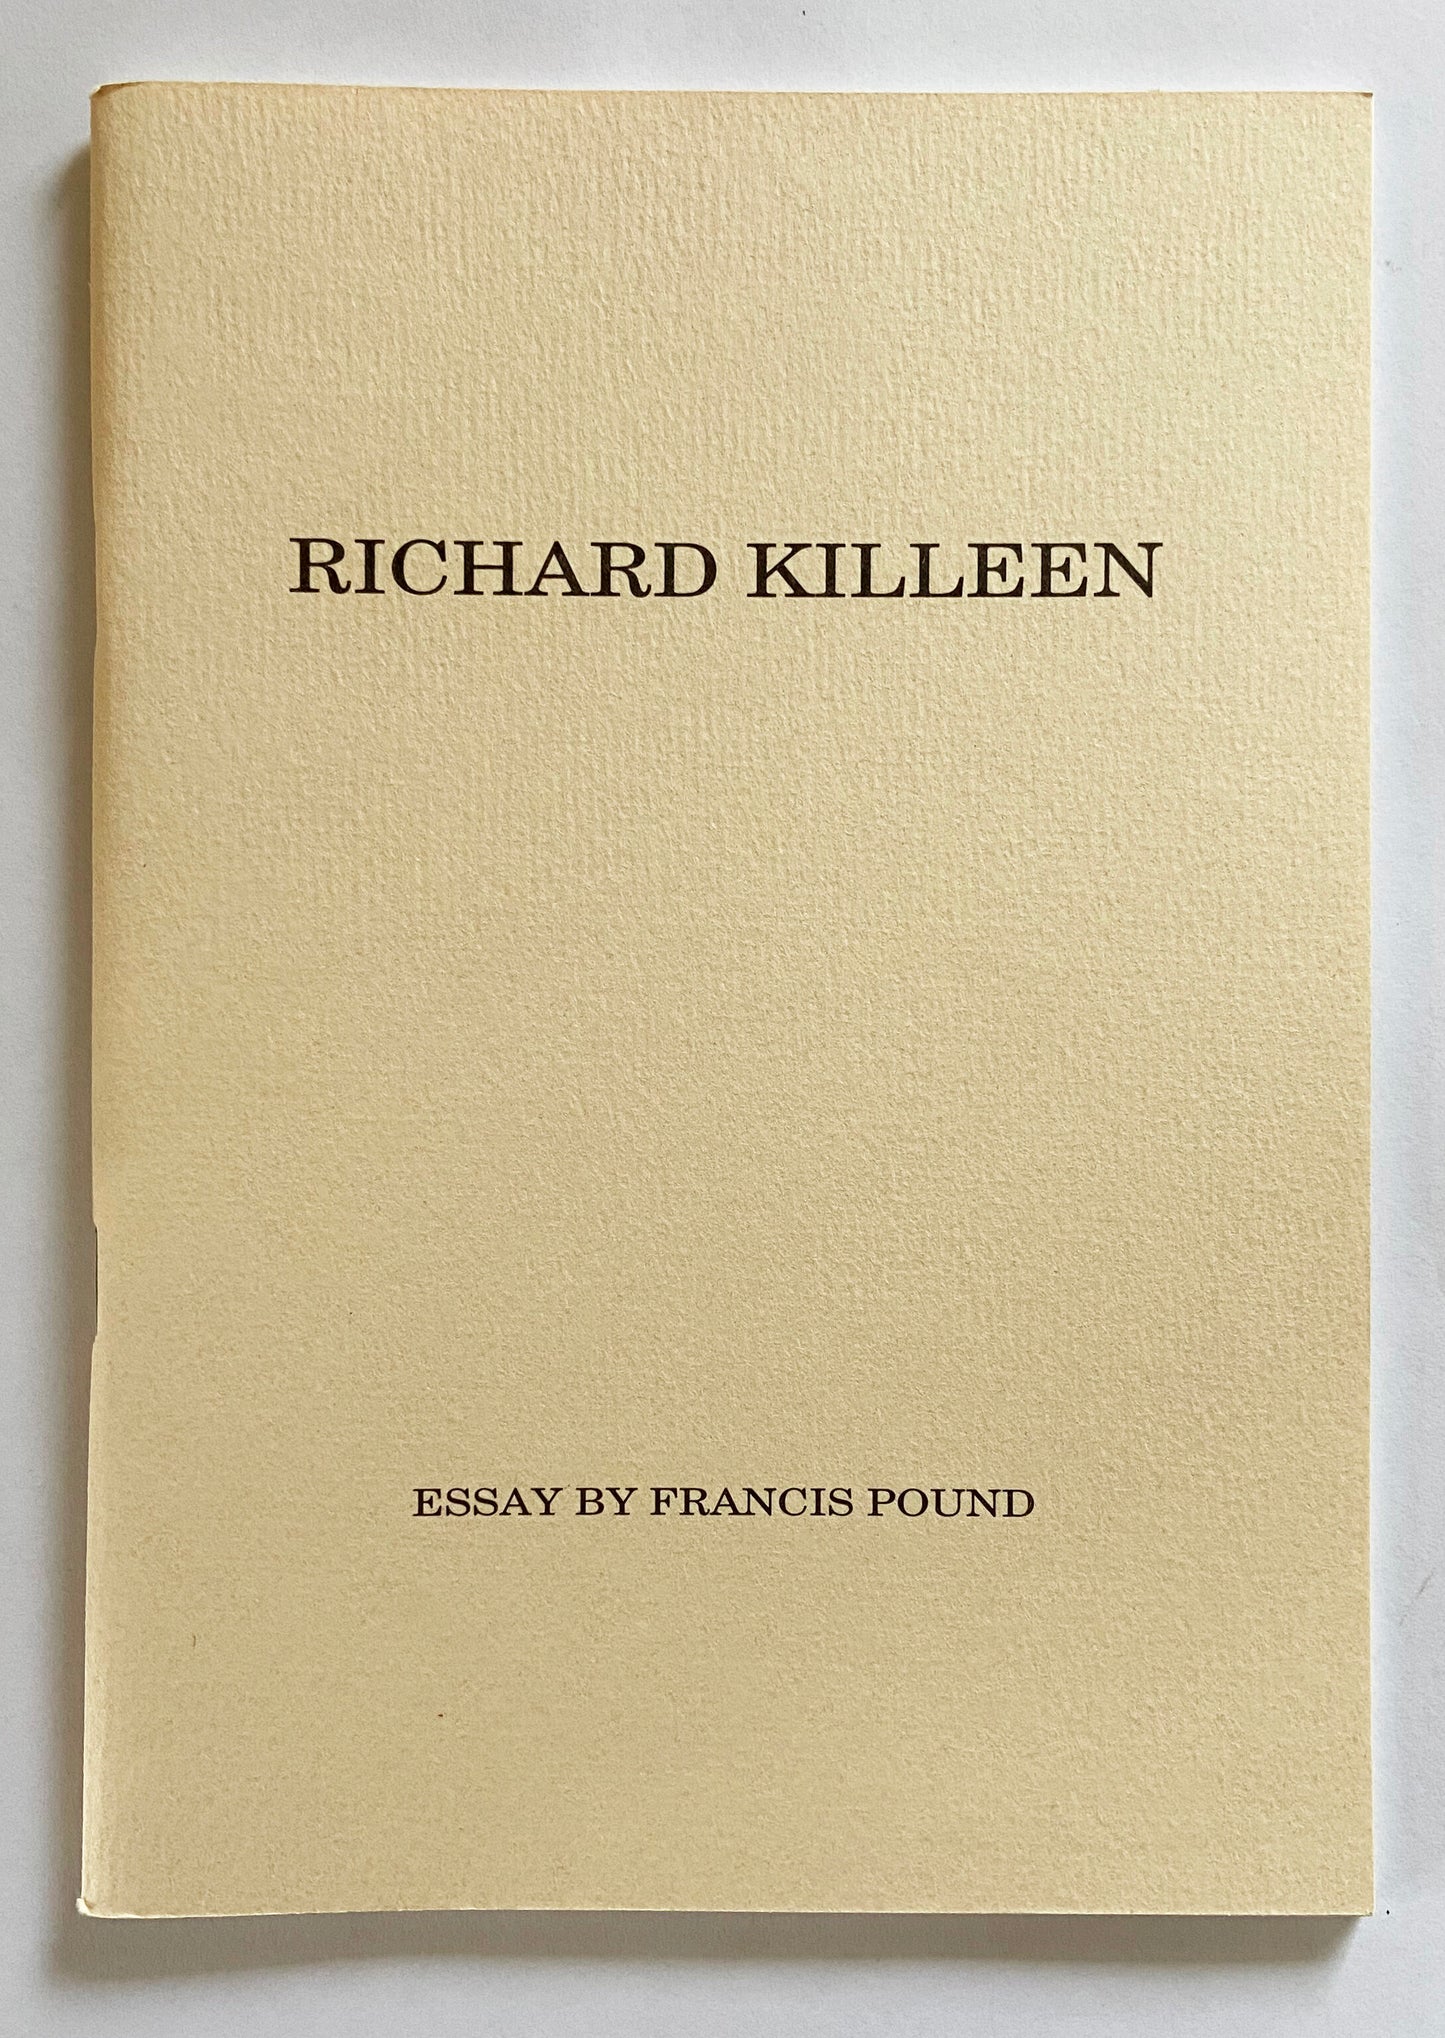 Richard Killeen - Richard Killeen